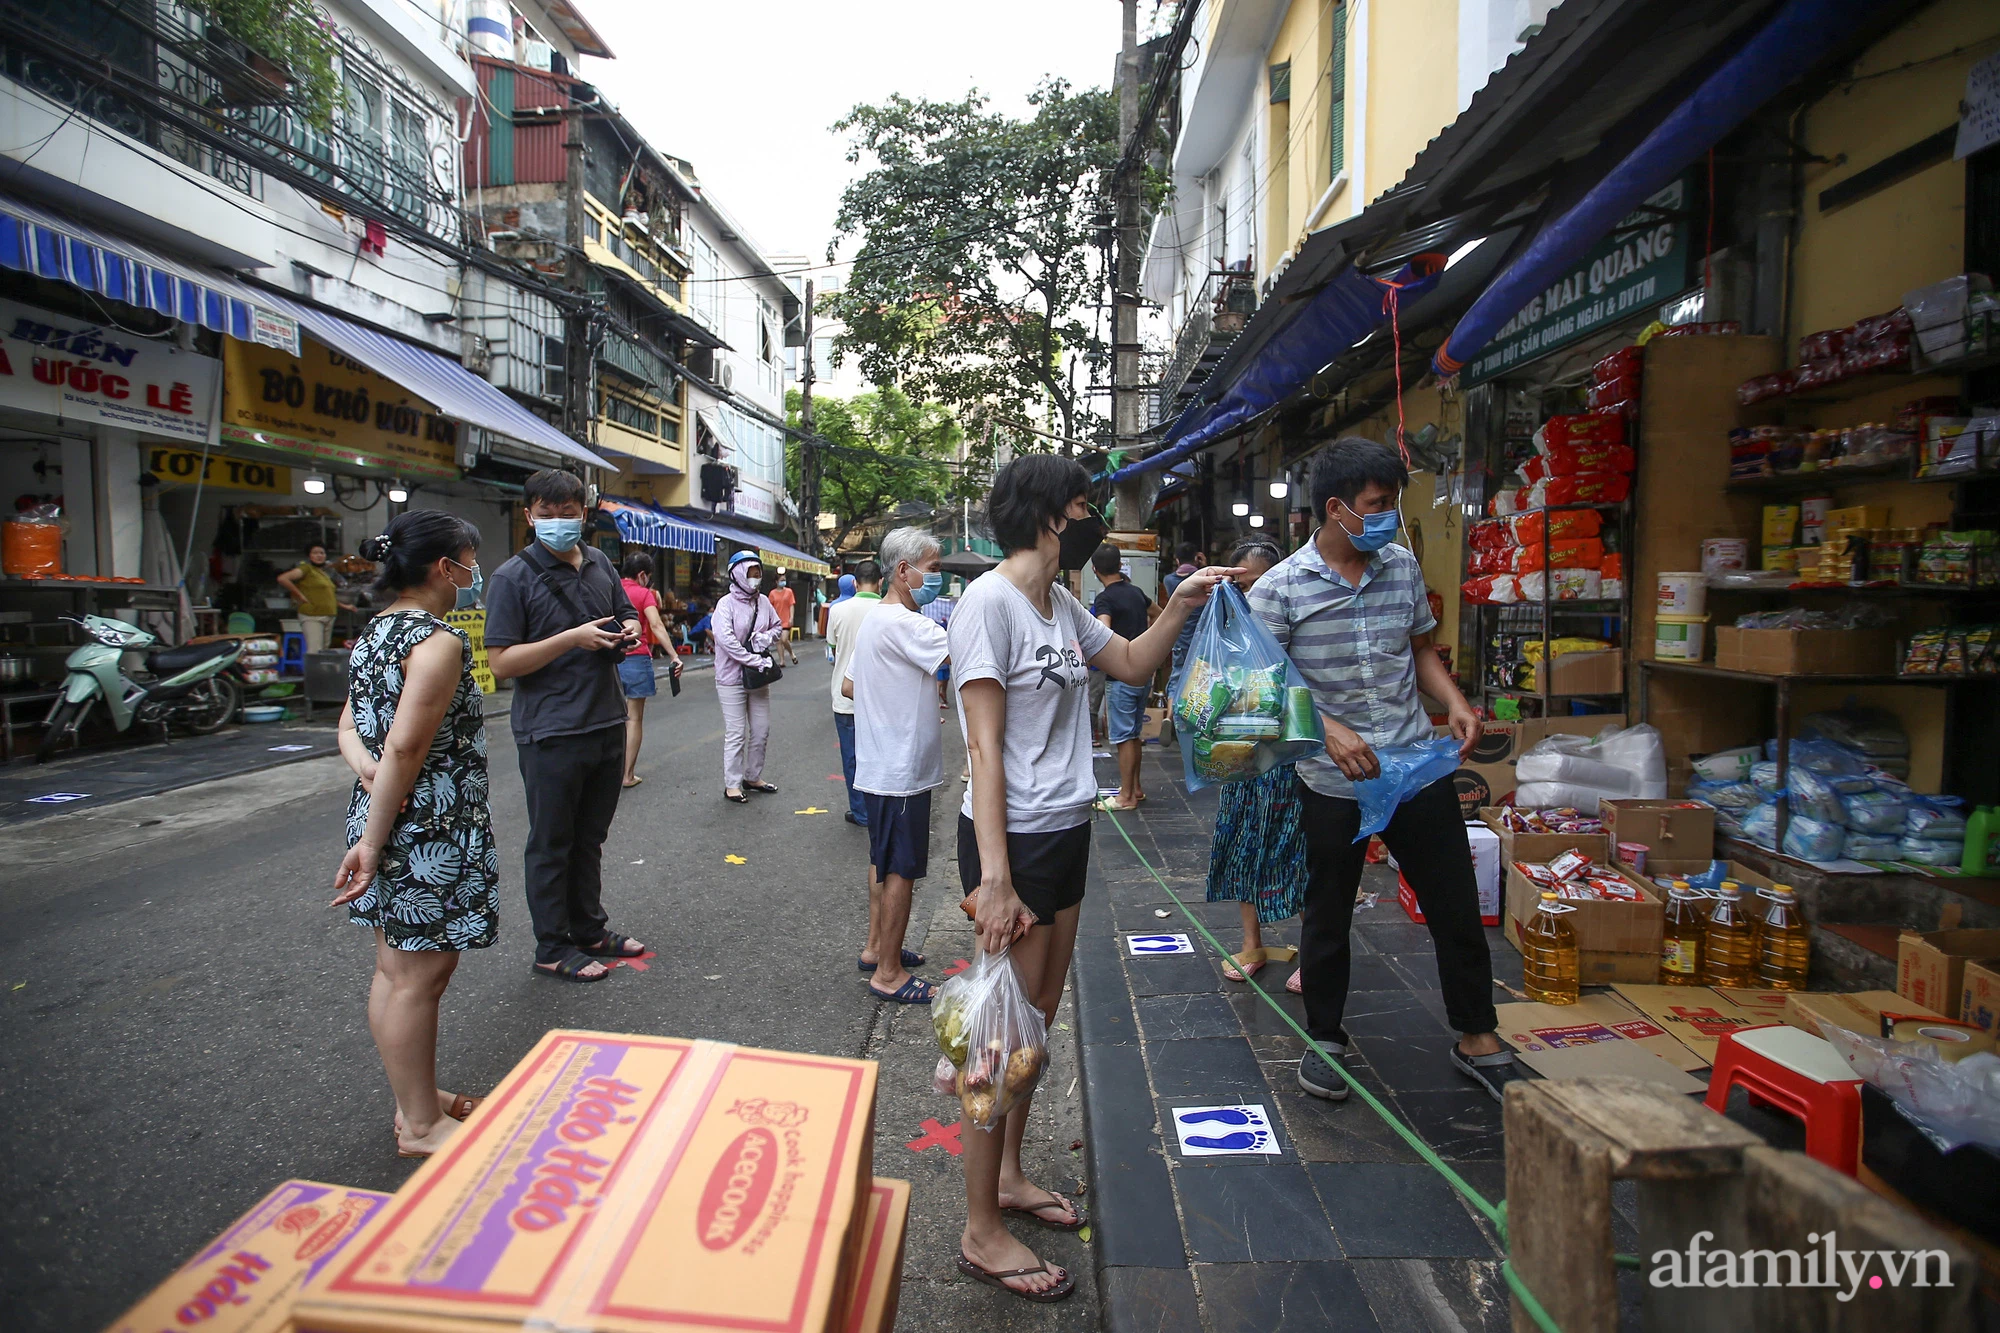 Ngày đầu giãn cách theo Chỉ thị 16, khu chợ ở Hà Nội kẻ vạch cách nhau 2 m, người mua kẻ bán tuy xa mặt nhưng không cách lòng - Ảnh 3.